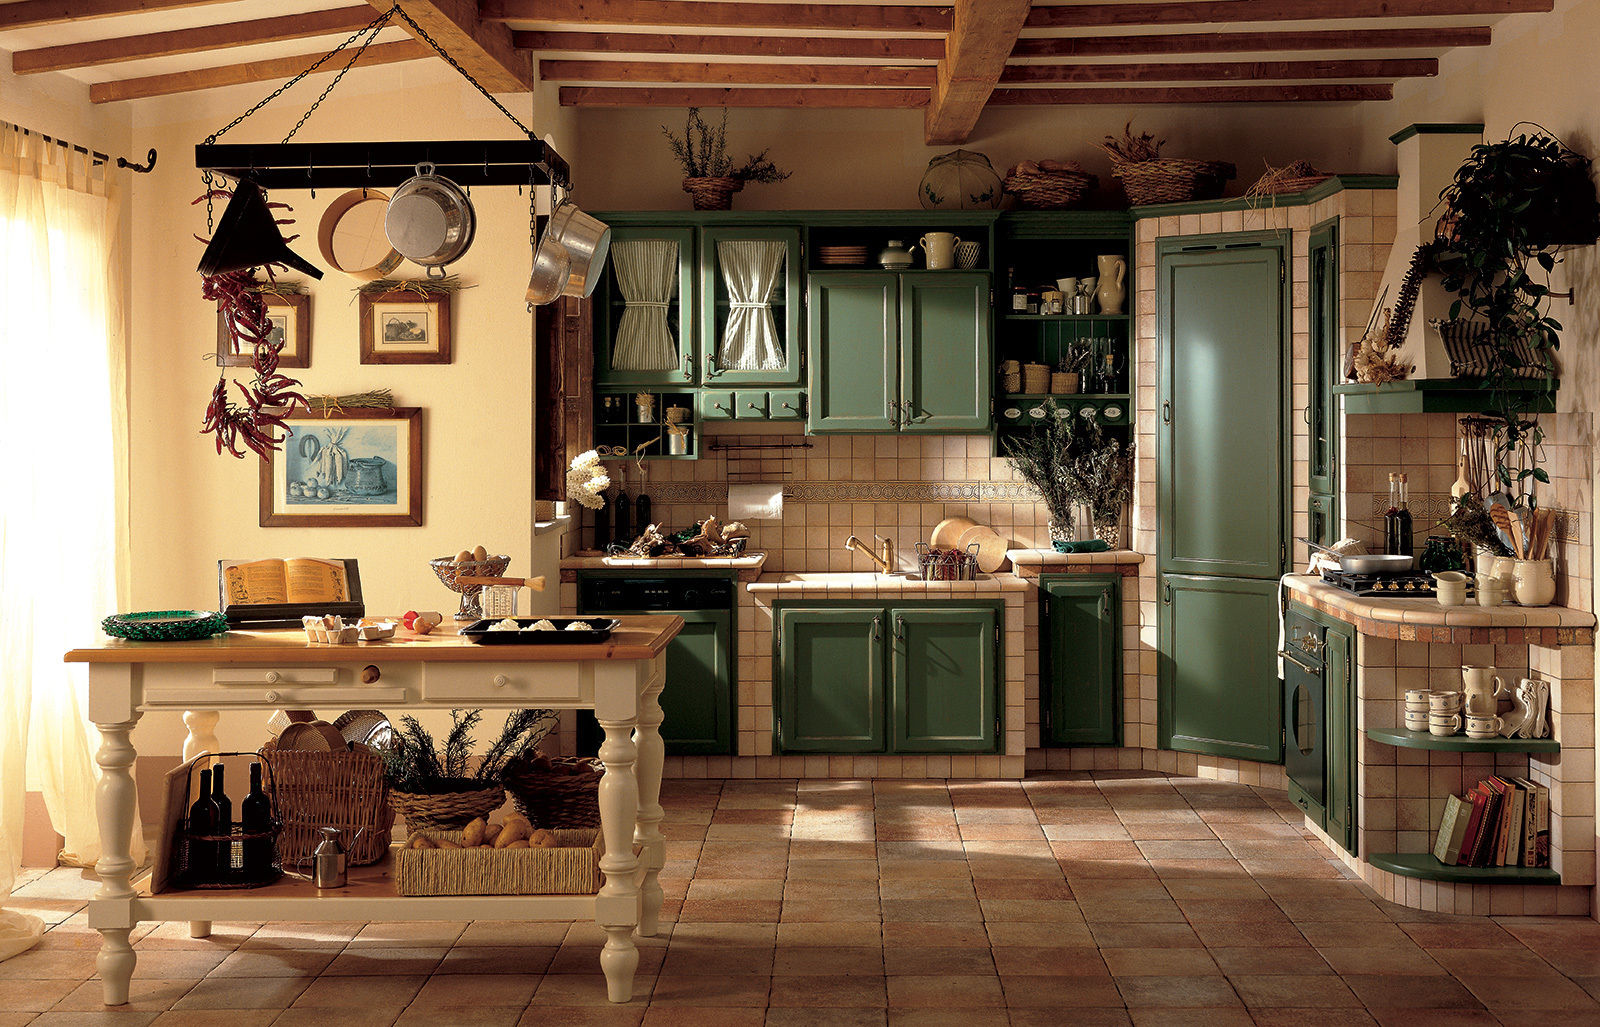 Alice Perimetro Cucine Cucina in stile rustico Lavandini & Rubinetti